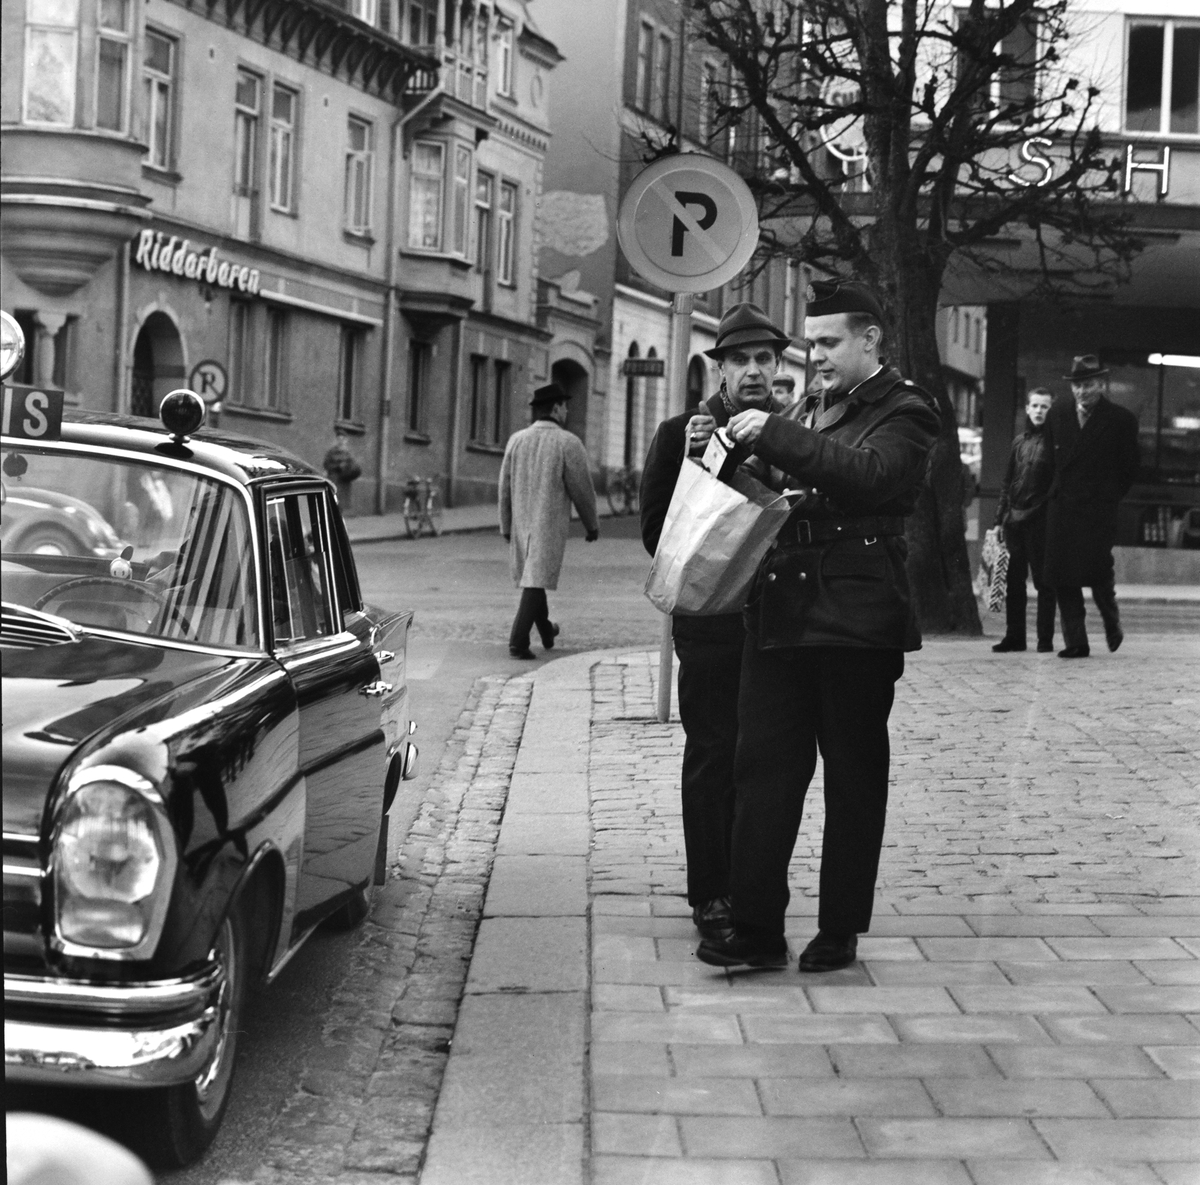 Lördagseftermiddag i Södertälje, 1961.
Pressfotografier från 1950-1960-talet. Samtliga bilder är tagna i Östergötland, de flesta i Linköping.